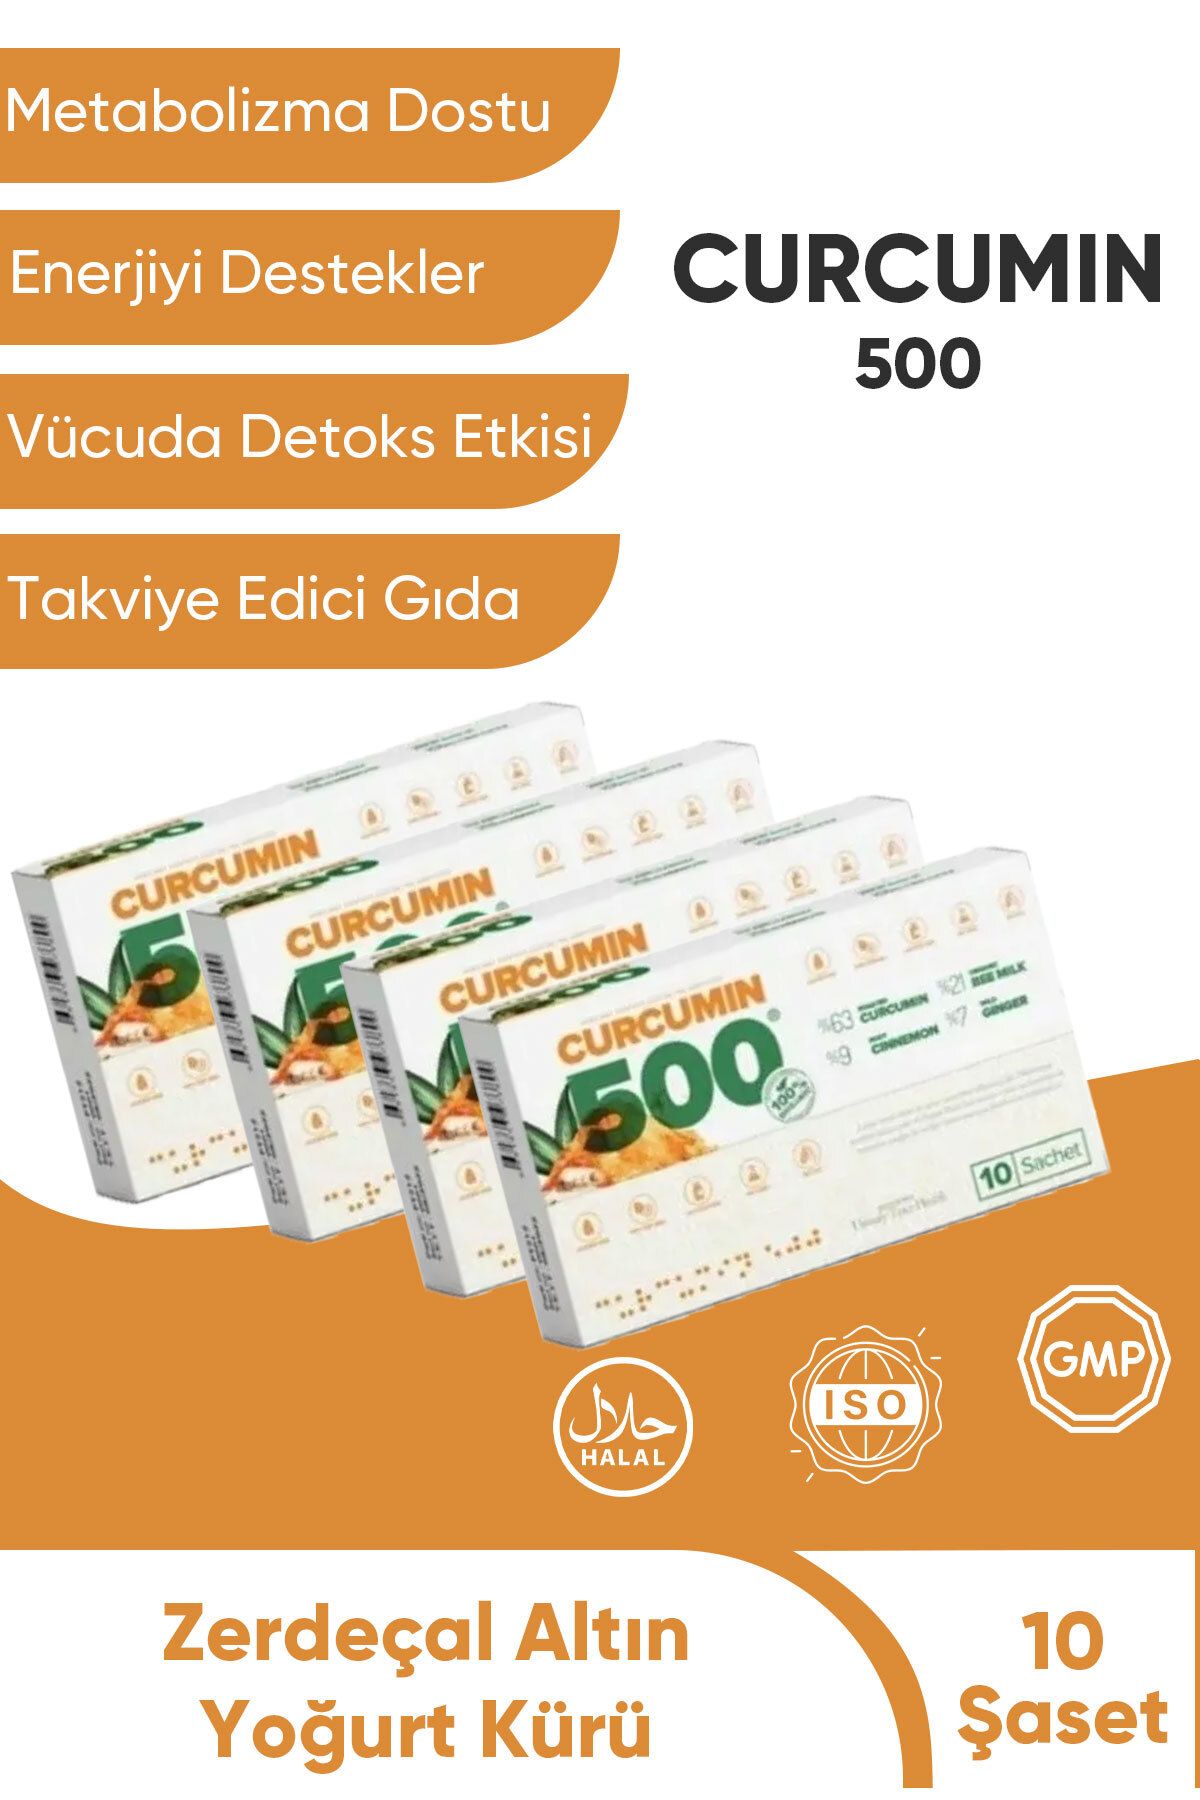 Curcumin 500 Zayıflatıcı Yağ Yağ Yakıcı Ödem Attırıcı Detox- Takviye Edici Gıda (4 Kutu 20 Şase)